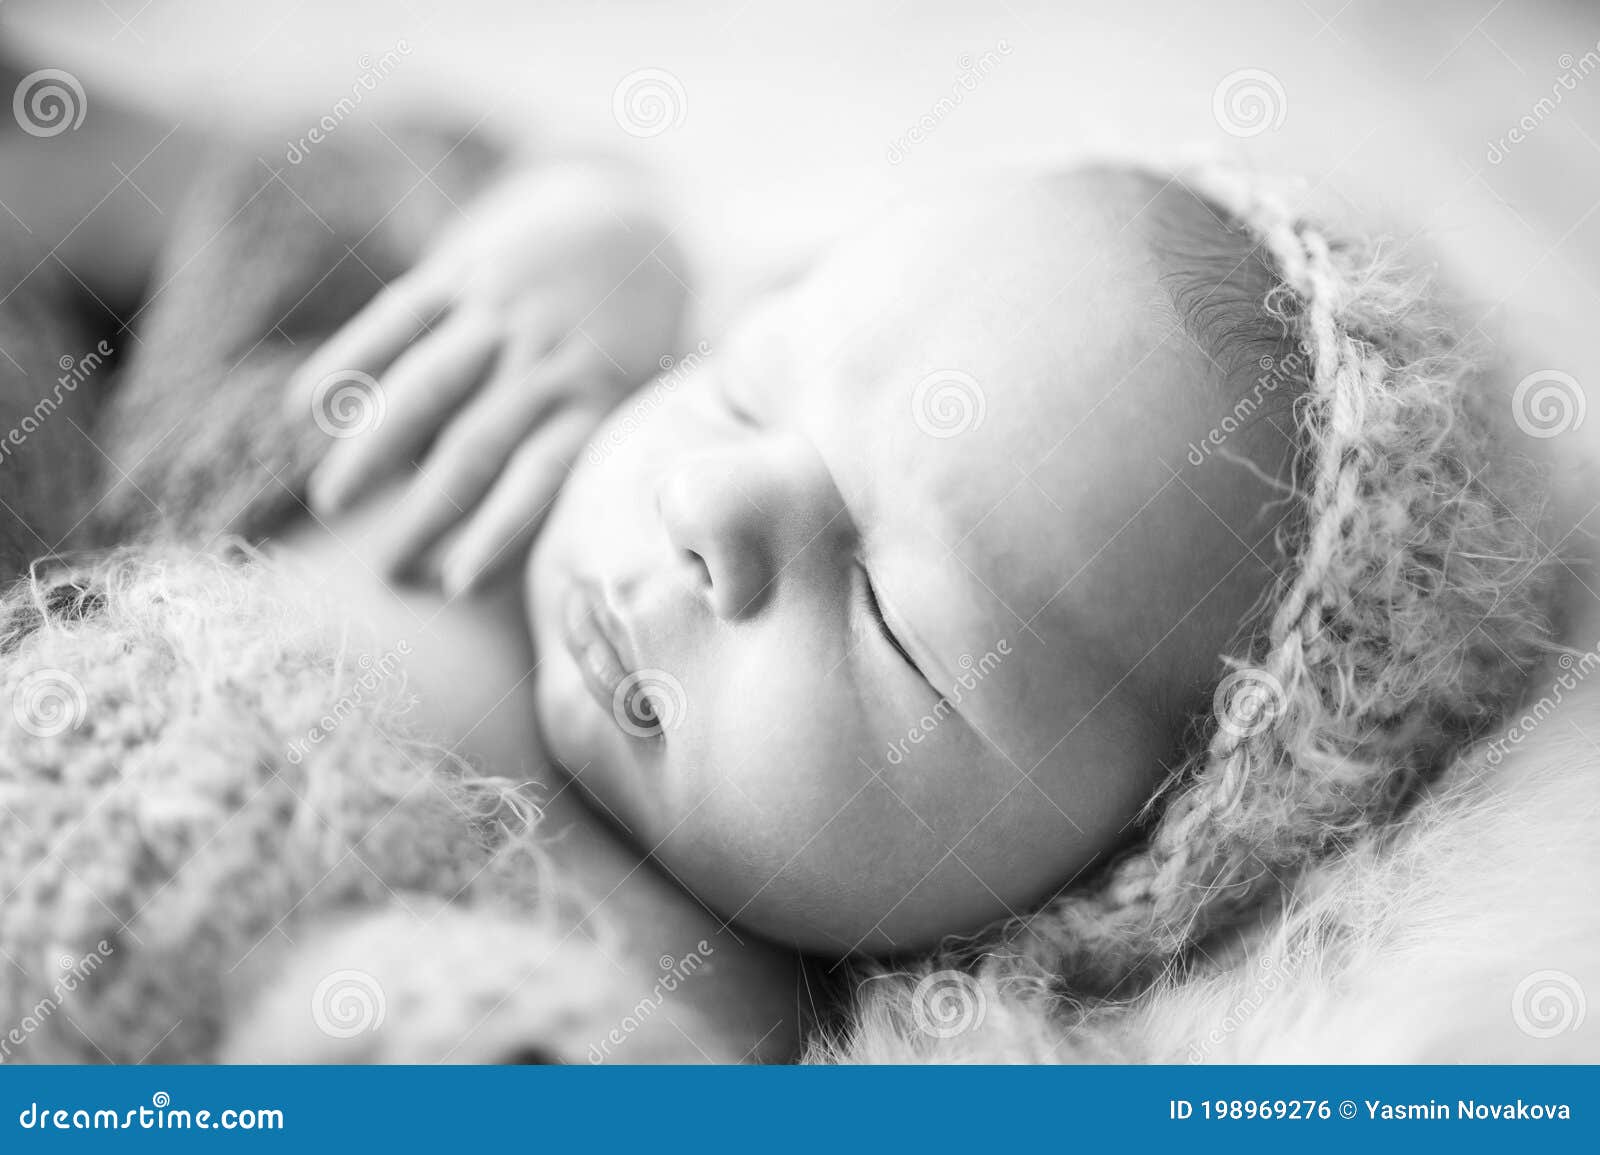 Retrato Del Primer Del Bebé Recién Nacido En El Gorro De Lana Gris